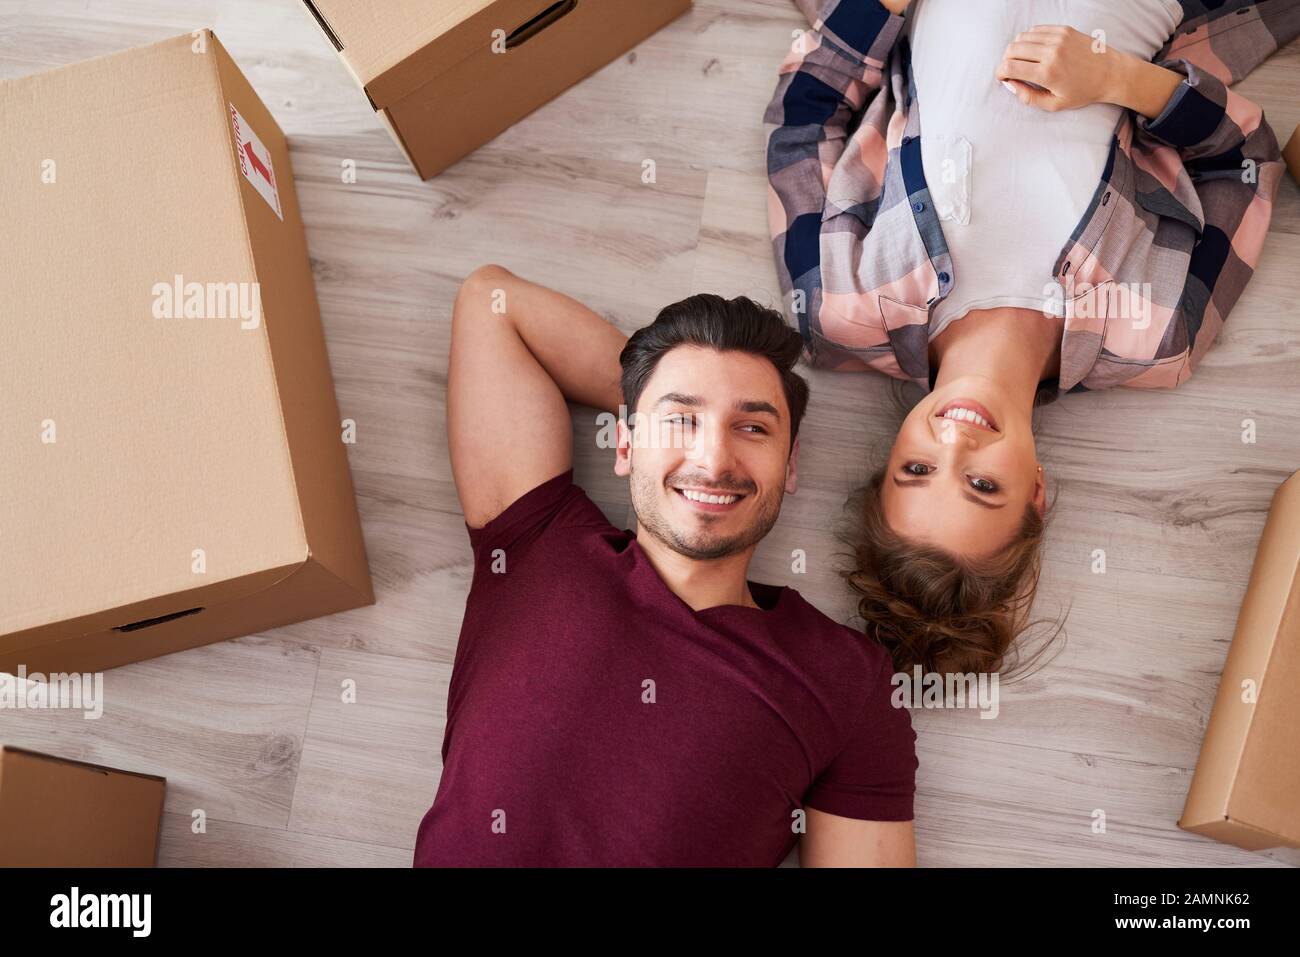 Porträt eines lächelnden Ehepaares, das Pause vom Umzug nach Hause nimmt Stockfoto